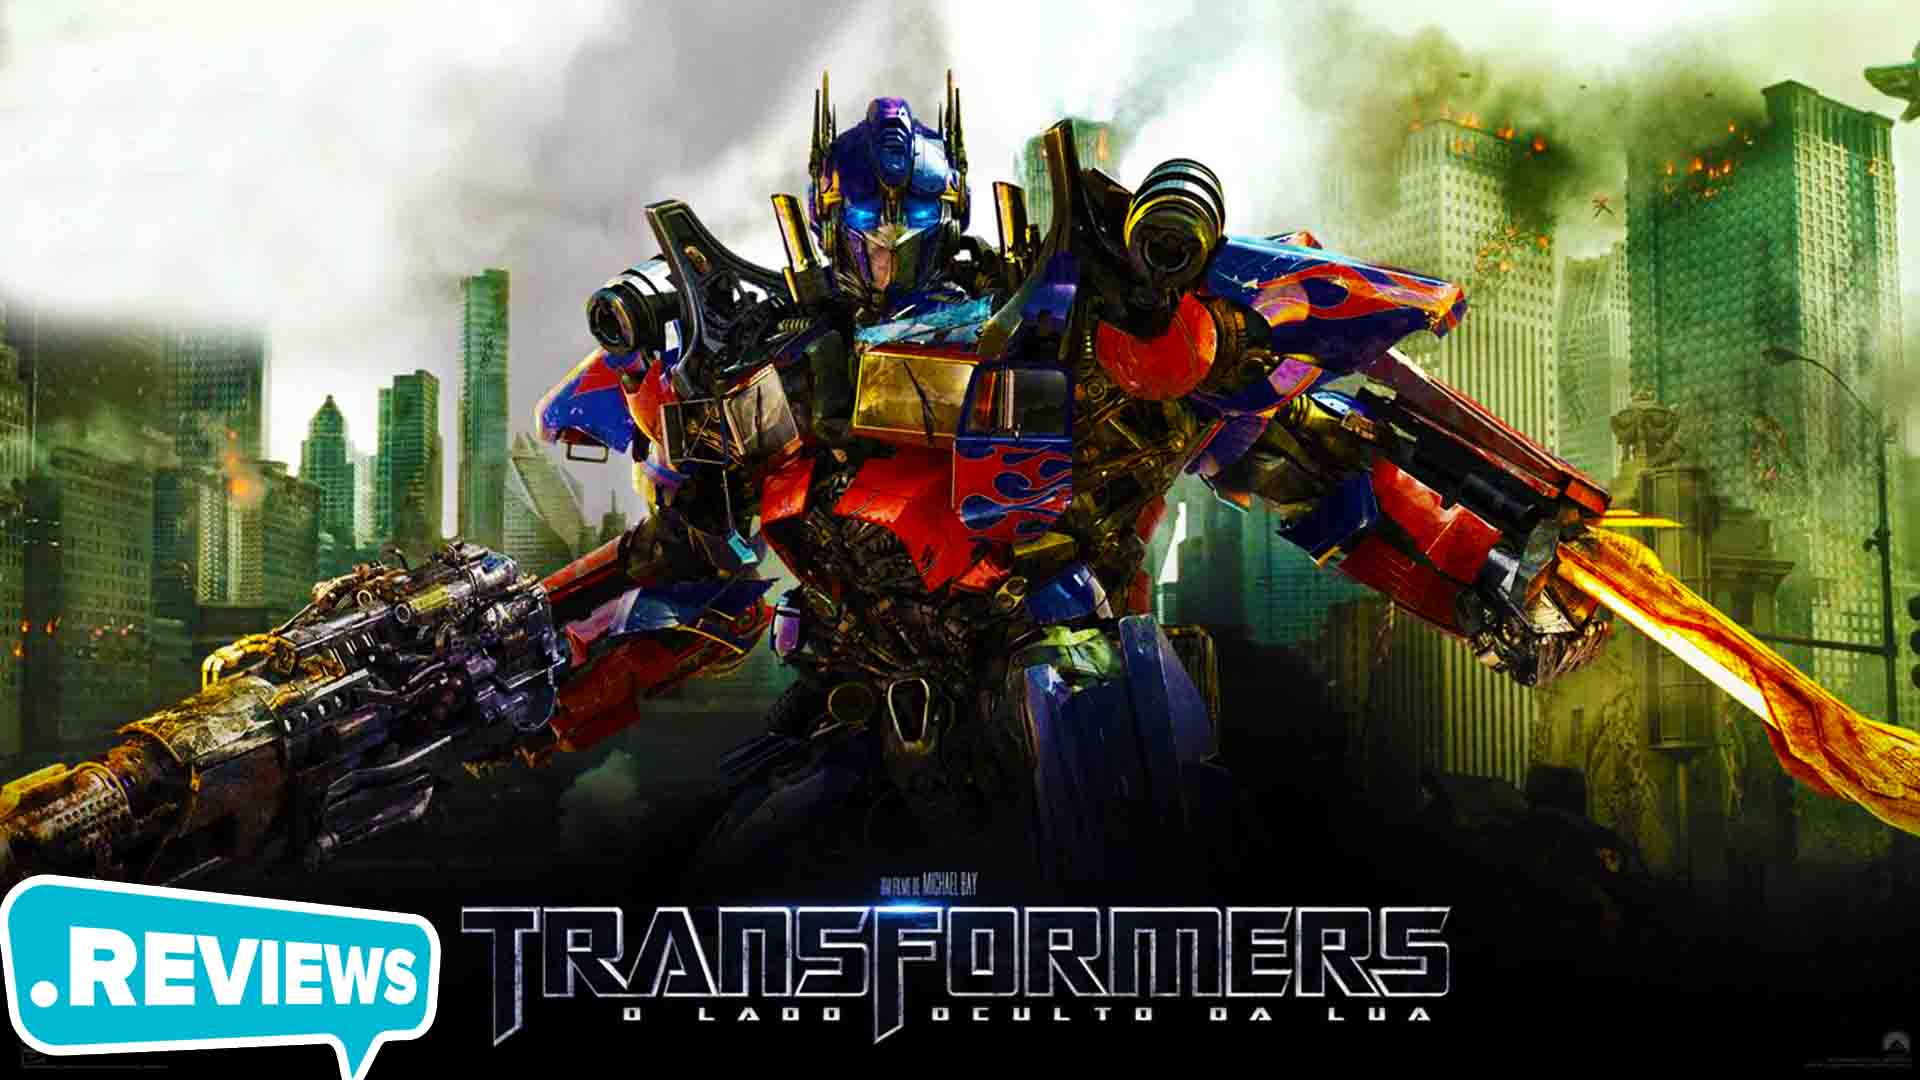 Transformers Rise of the Dark Spark - tải và cài đặt: Sẵn sàng để trở thành một chiến binh Autobot hoặc Decepticon? Transformers Rise of the Dark Spark sẽ đưa bạn vào thế giới đầy phiêu lưu của Robot. Với đầy đủ tính năng và cốt truyện đánh đấm, Transformers Rise of the Dark Spark là trò chơi lý tưởng cho các fan hâm mộ của loạt phim Transformers. Hãy tải và cài đặt ngay hôm nay để cảm nhận và chinh phục!